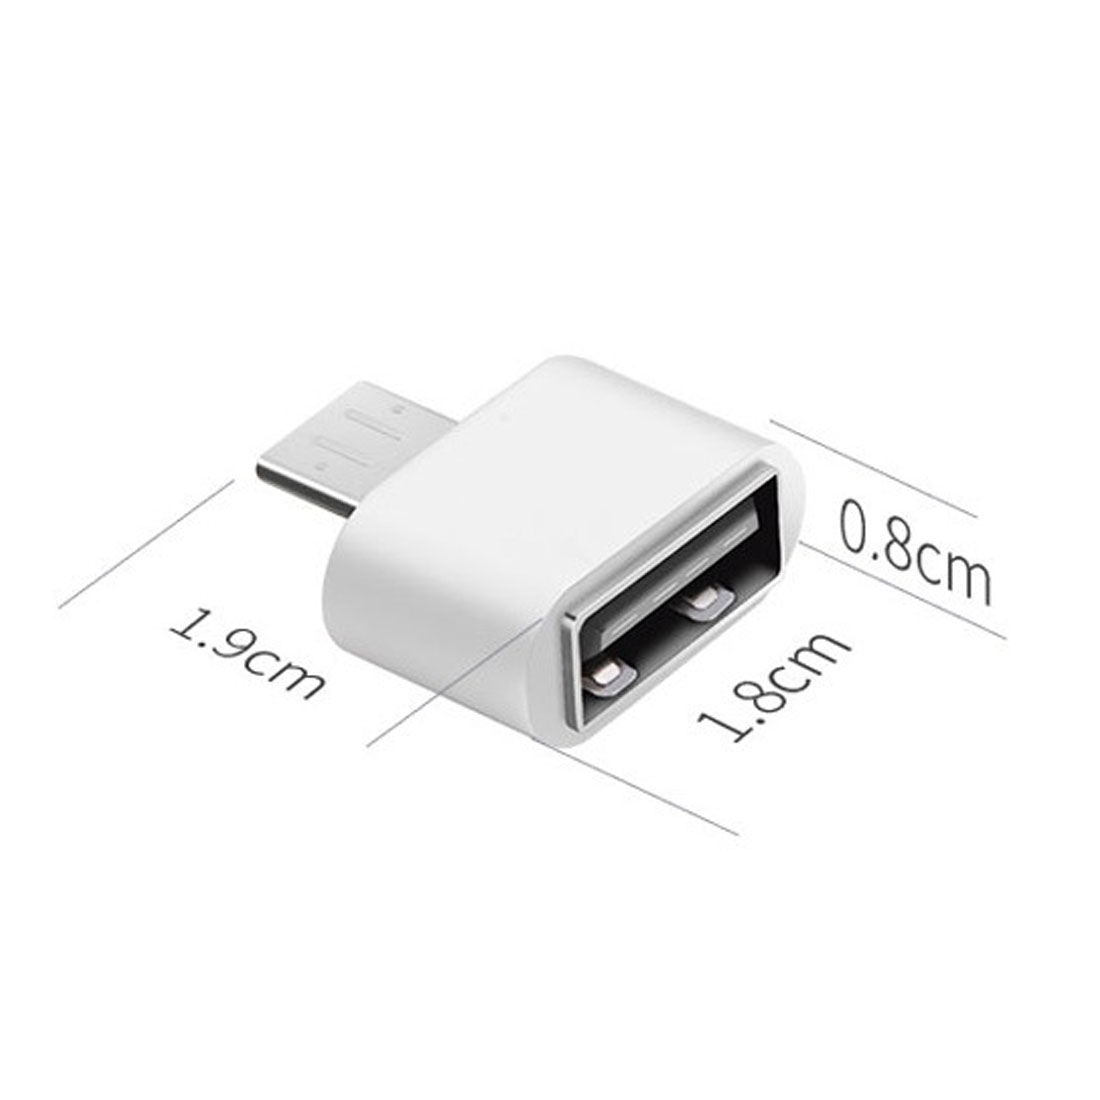 Afzonderlijk ontwerp verkoopplan USB A (female) naar USB C (male) adapter verloopstekker - 2 stuks -  Endoscoopcamera.nl